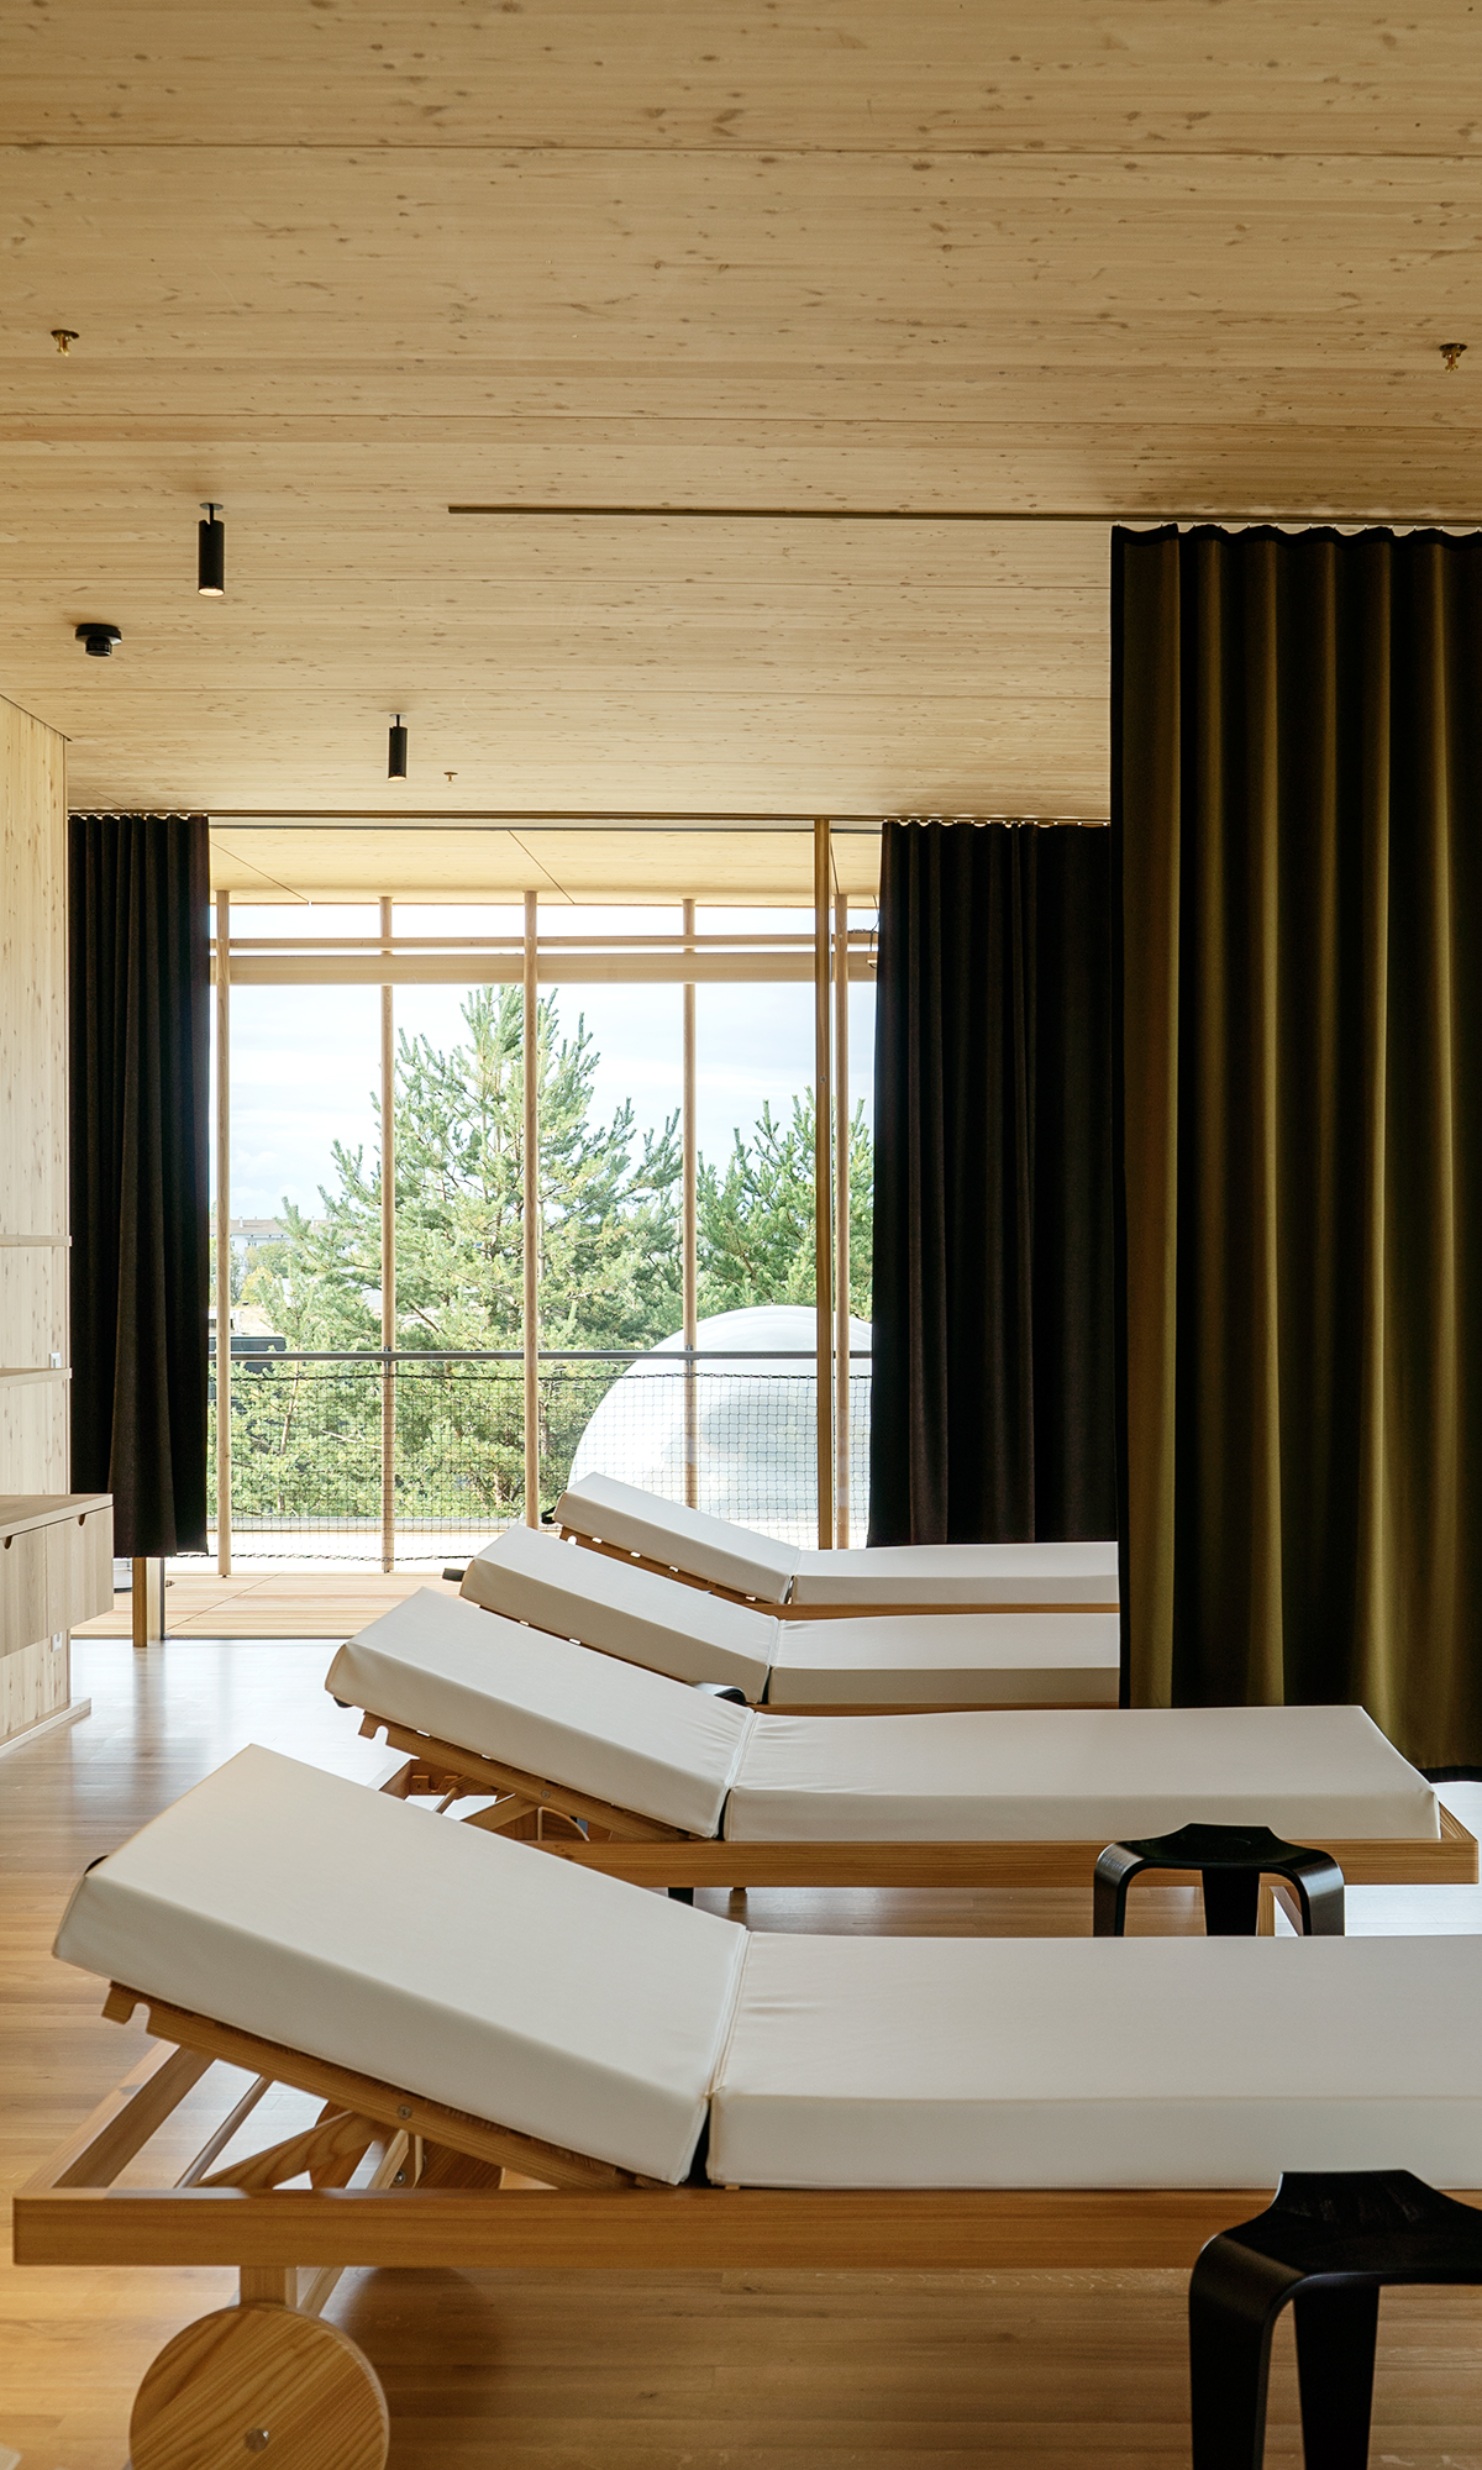 Vue de la salle de repos lumineuse avec 4 chaises longues et des rideaux foncés pour séparer l’espace